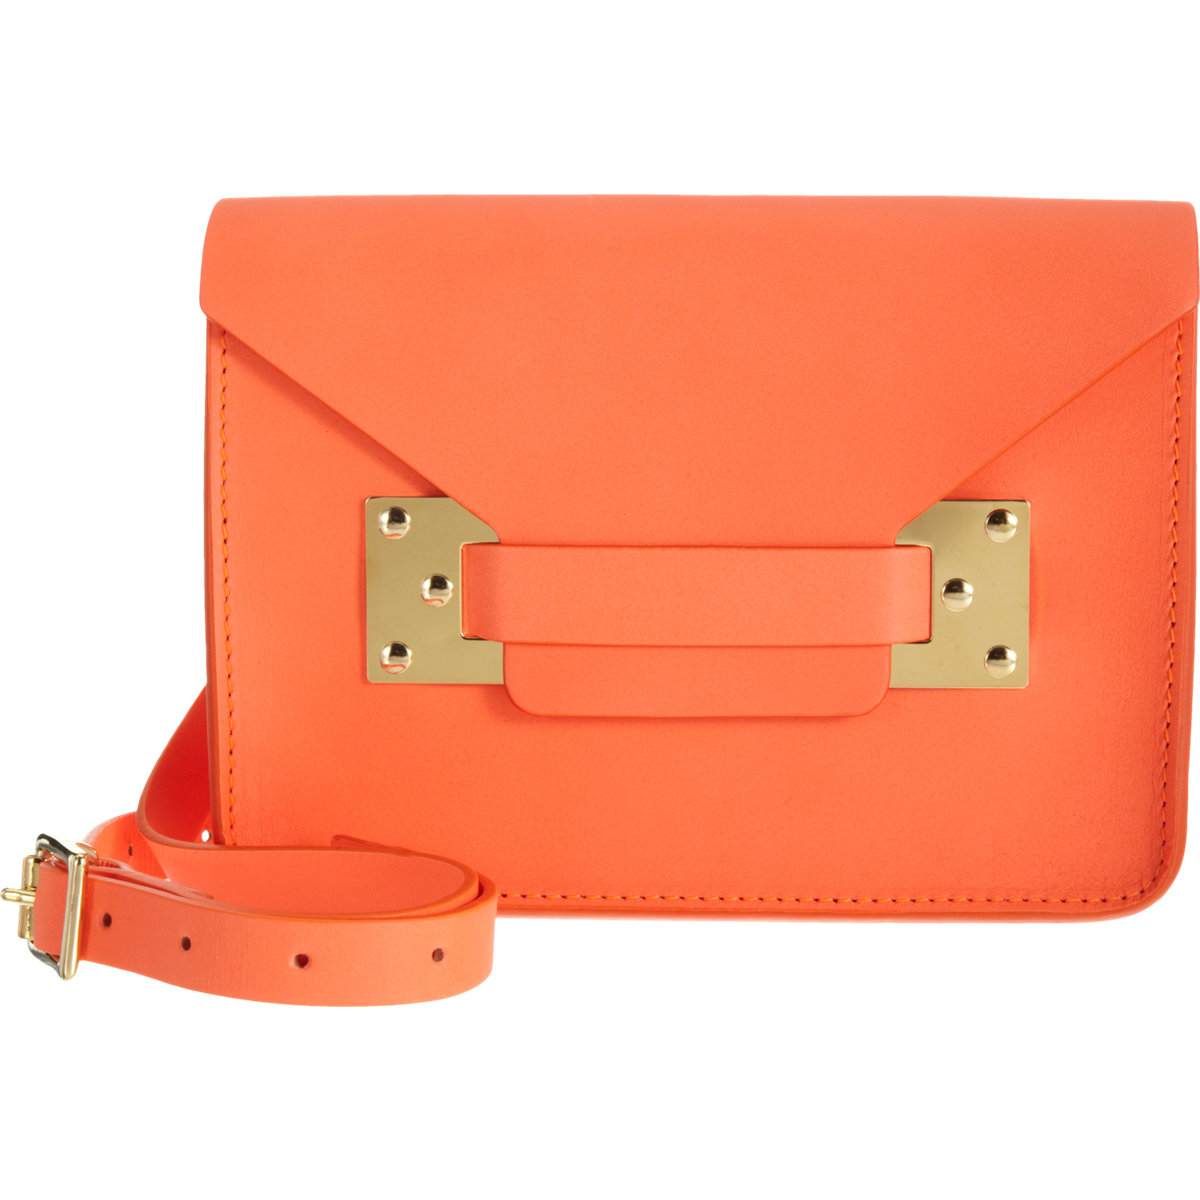 Sophie Hulme Mini Envelope Bag in Orange (gold) | Lyst